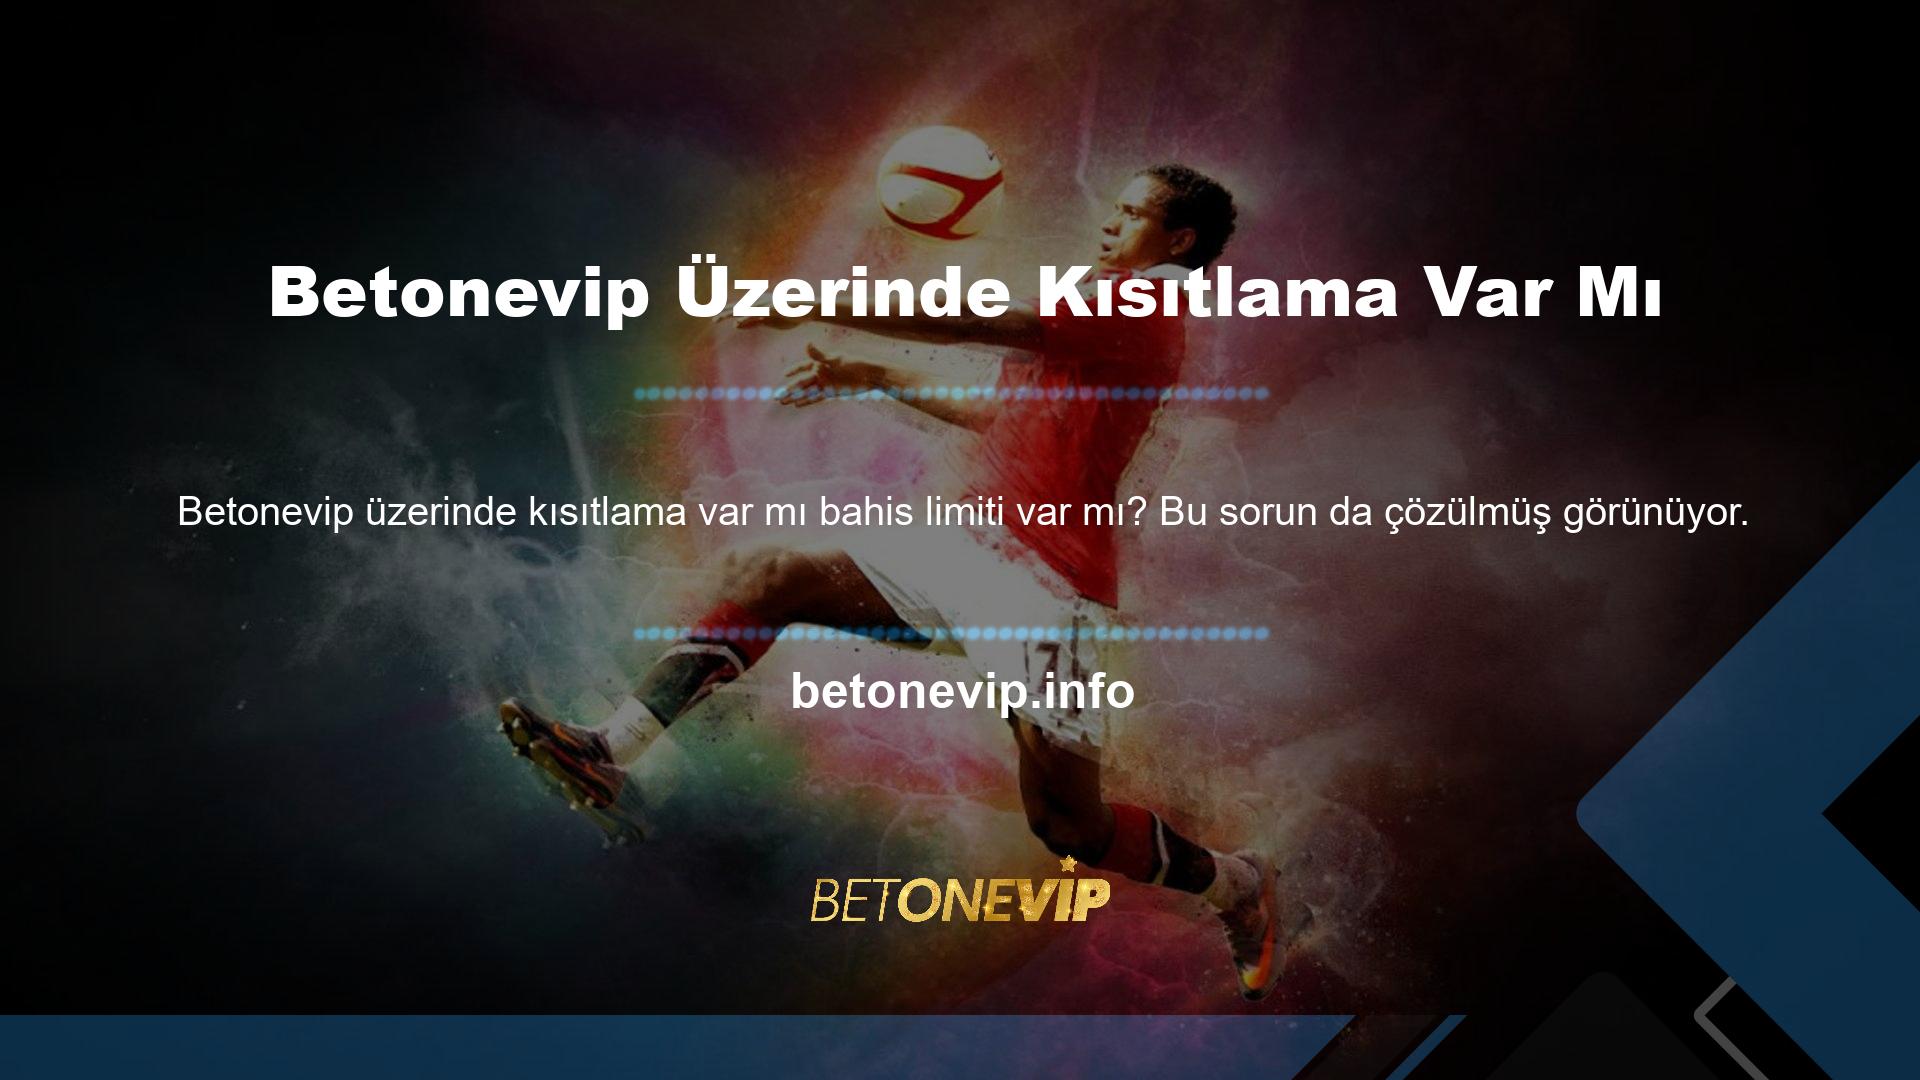 Betonevip sitesinin yöneticisi, katılımcının hesabına aktarılan tutardan herhangi bir kesinti yapmaz